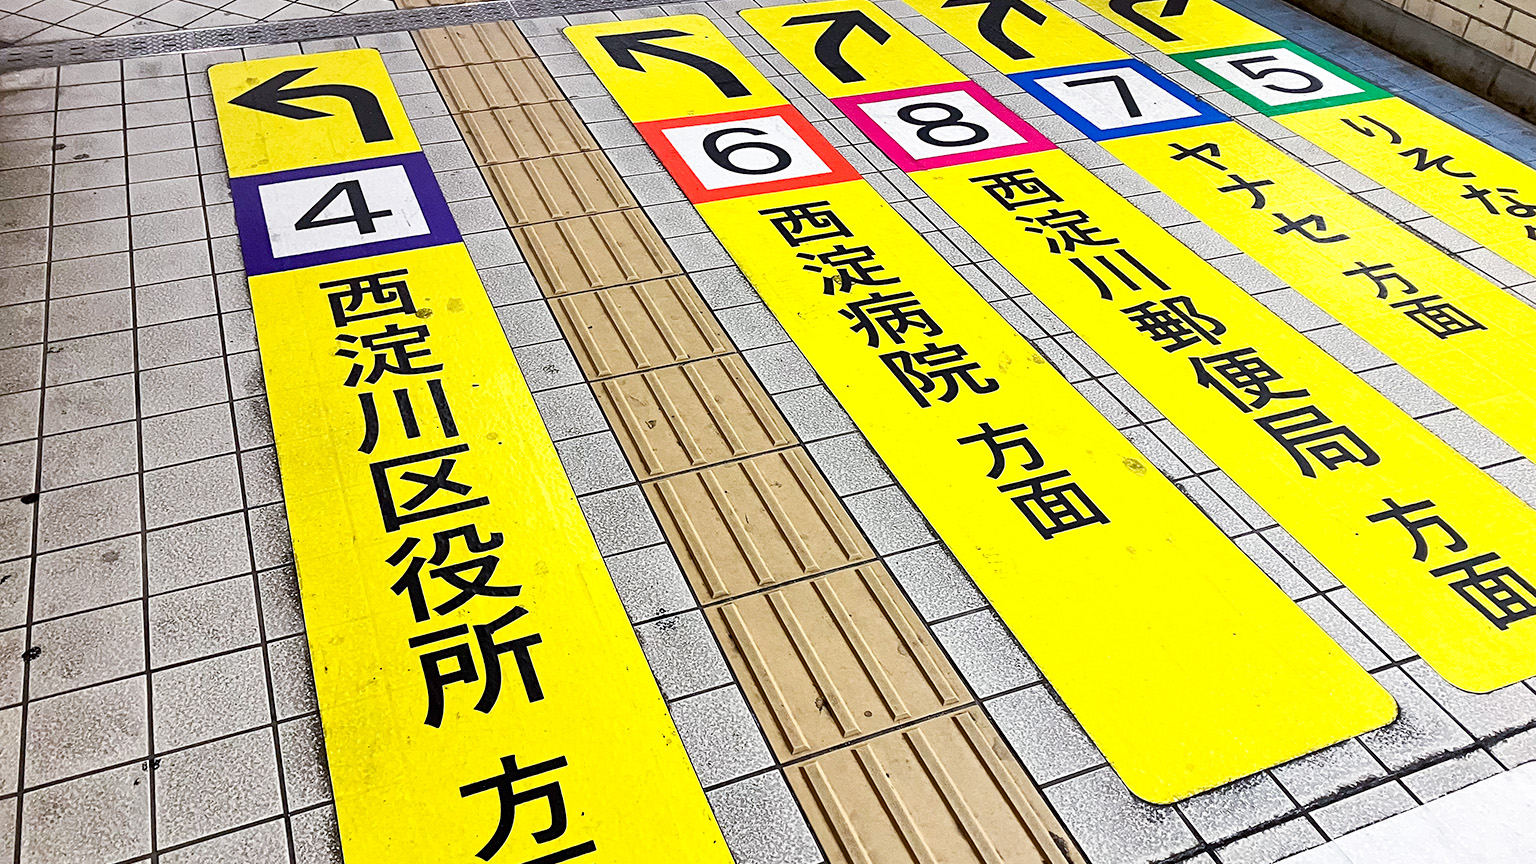 歌島橋地下道に整備された案内標示の写真